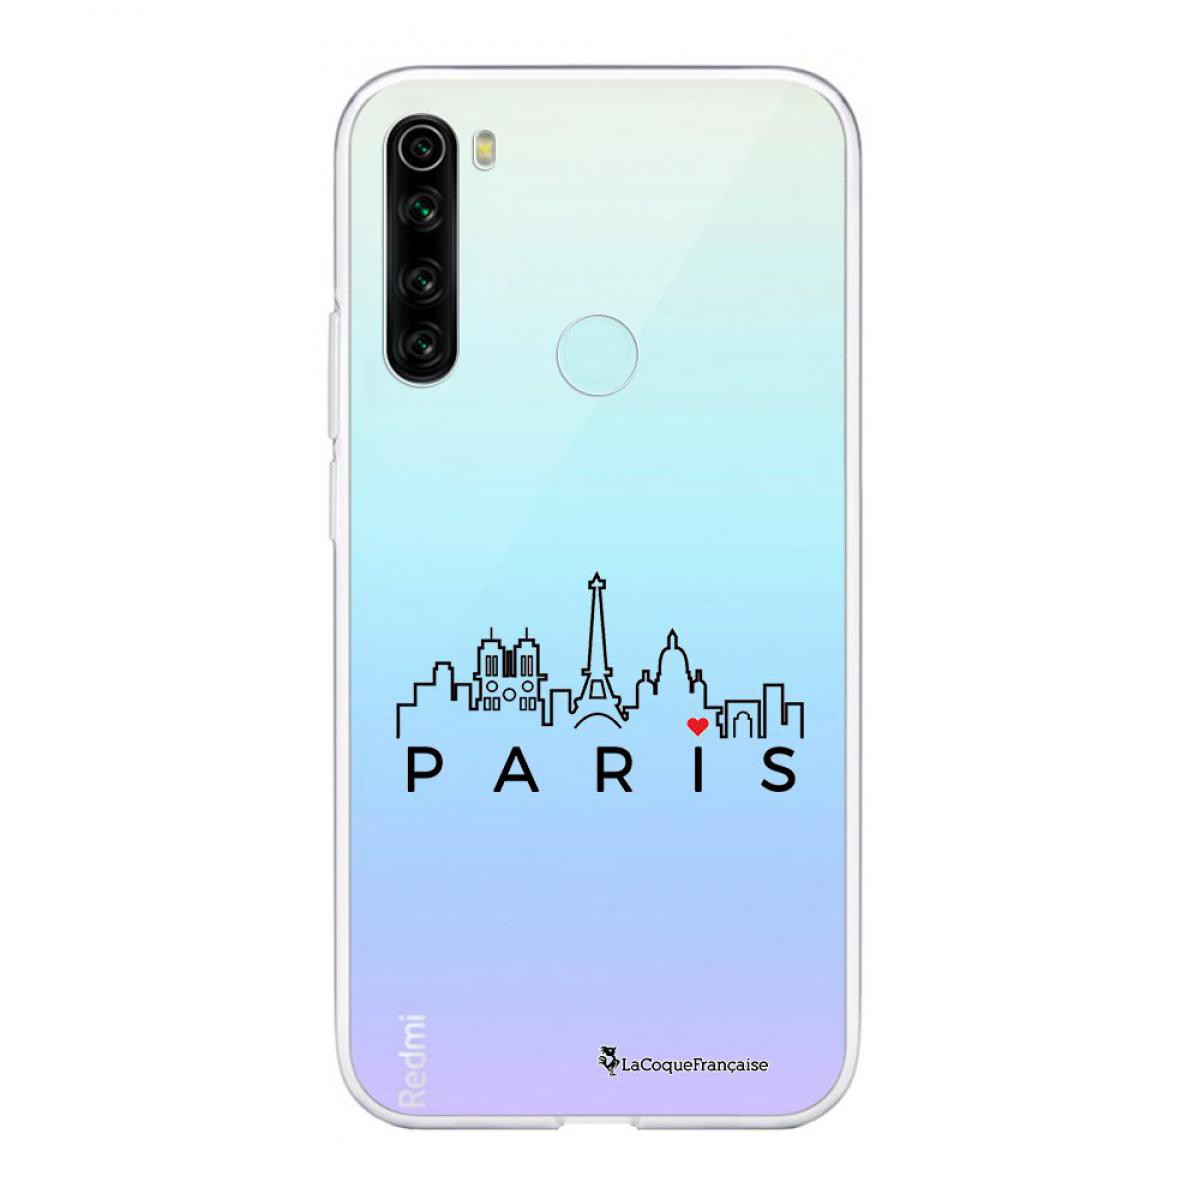 La Coque Francaise - Coque Xiaomi Redmi Note 8 T souple transparente Skyline Paris Motif Ecriture Tendance La Coque Francaise - Coque, étui smartphone